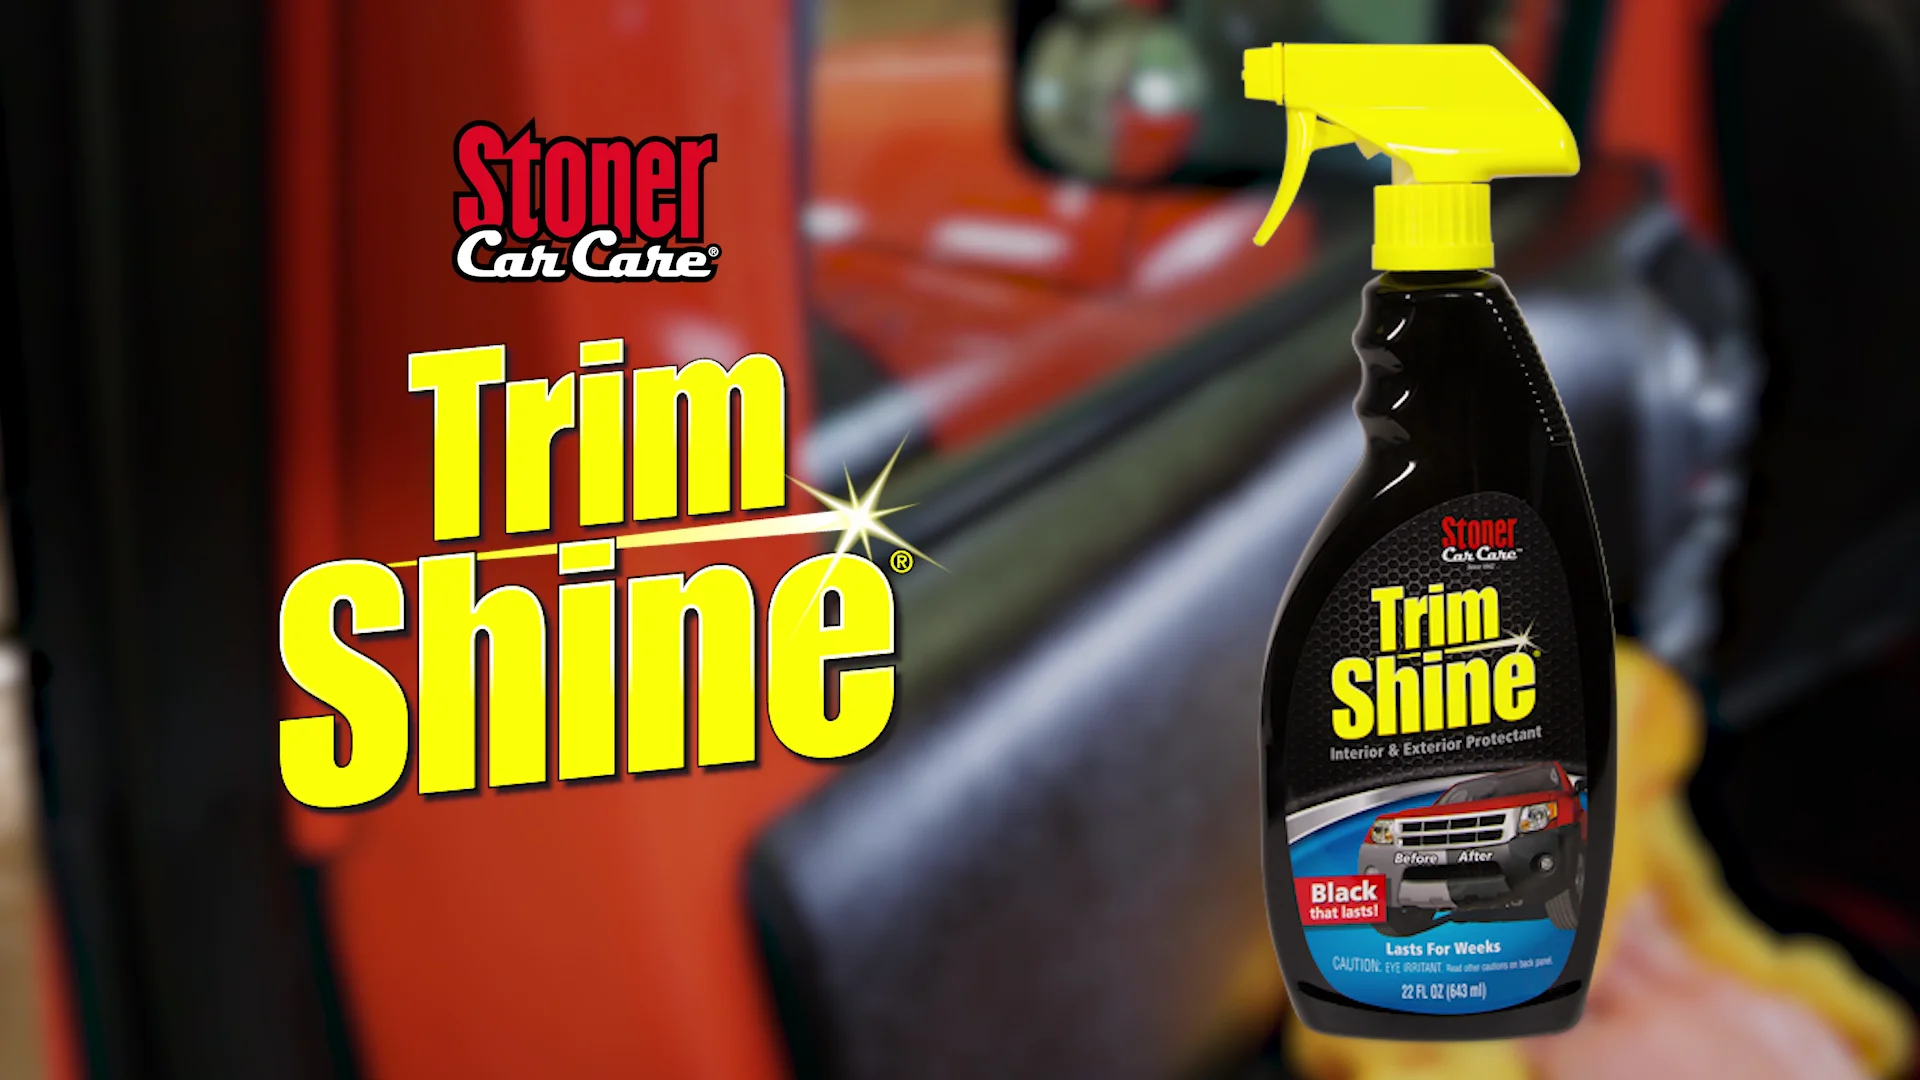 Trim Shine 22oz Trigger Spray from Stoner Car Care - 92034 on Vimeo